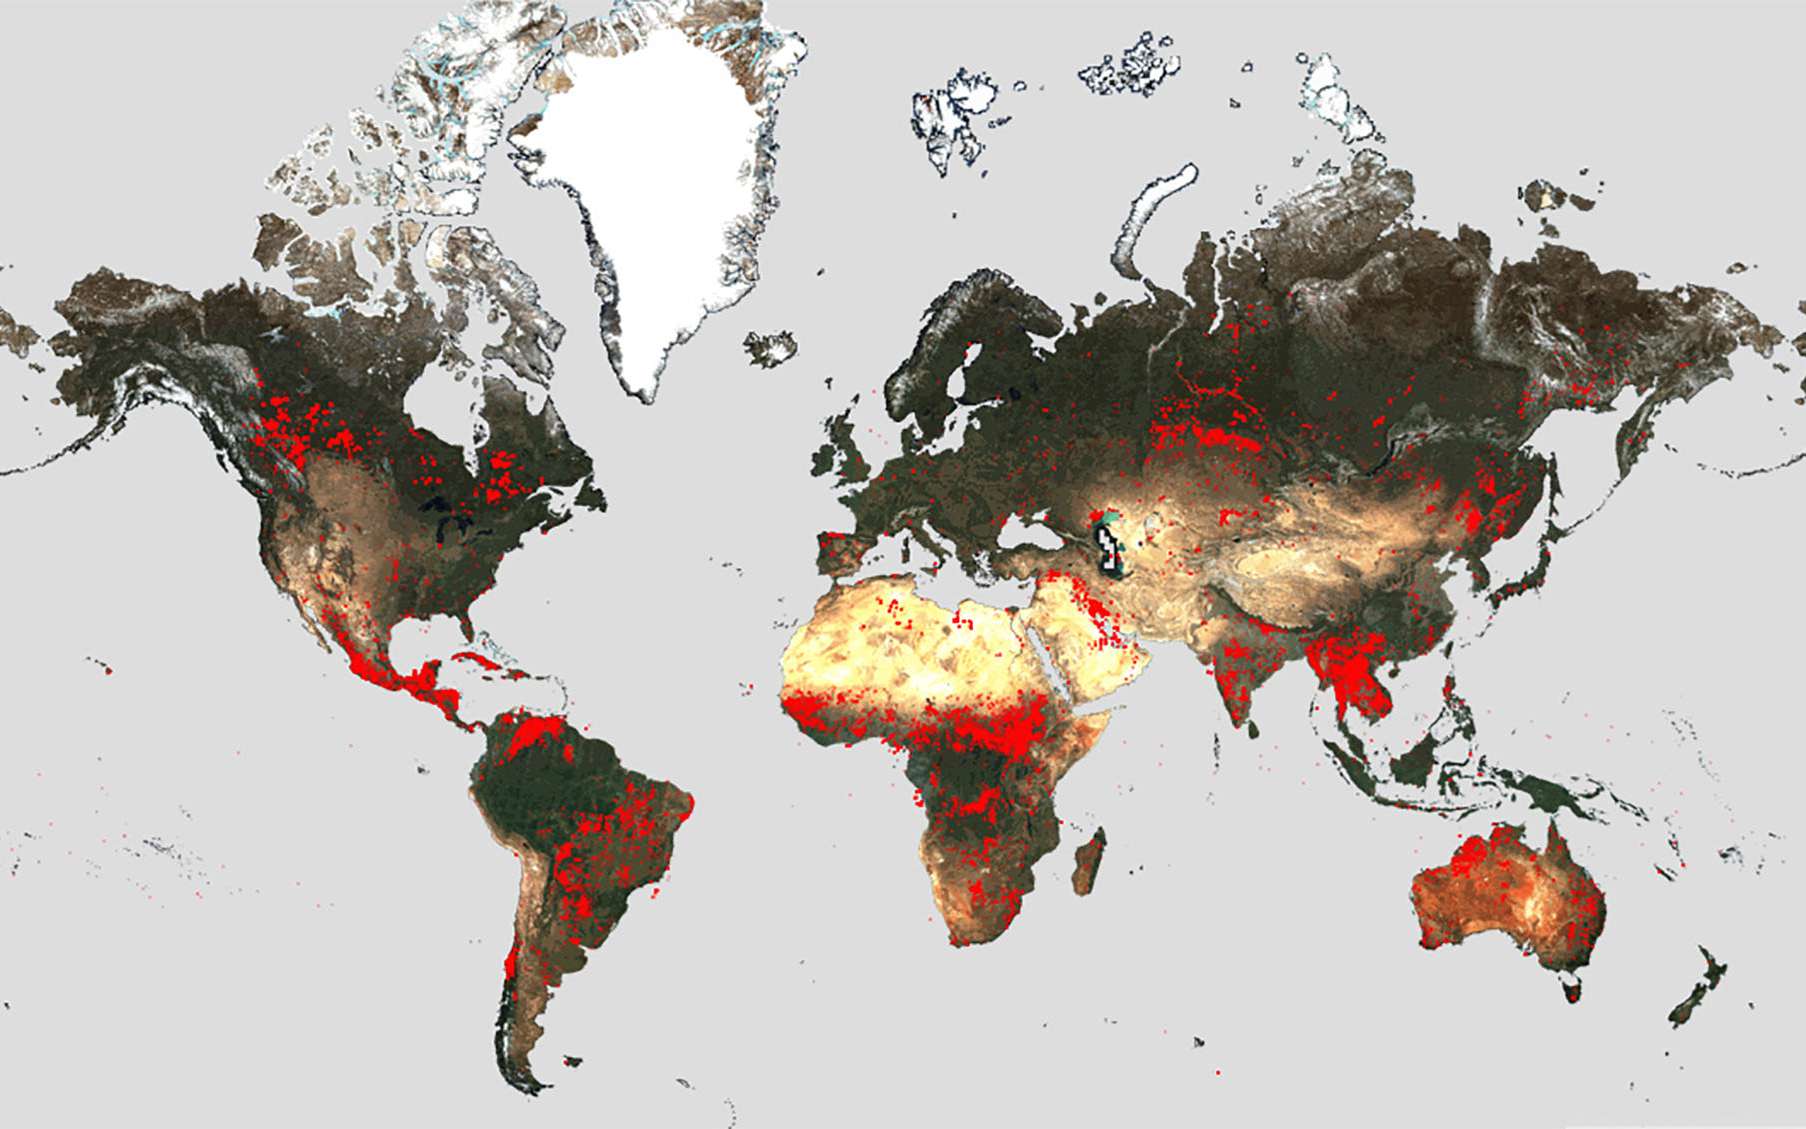 L'Atlas des feux de l'ESA : un outil puissant pour anticiper les incendies de forêt de demain